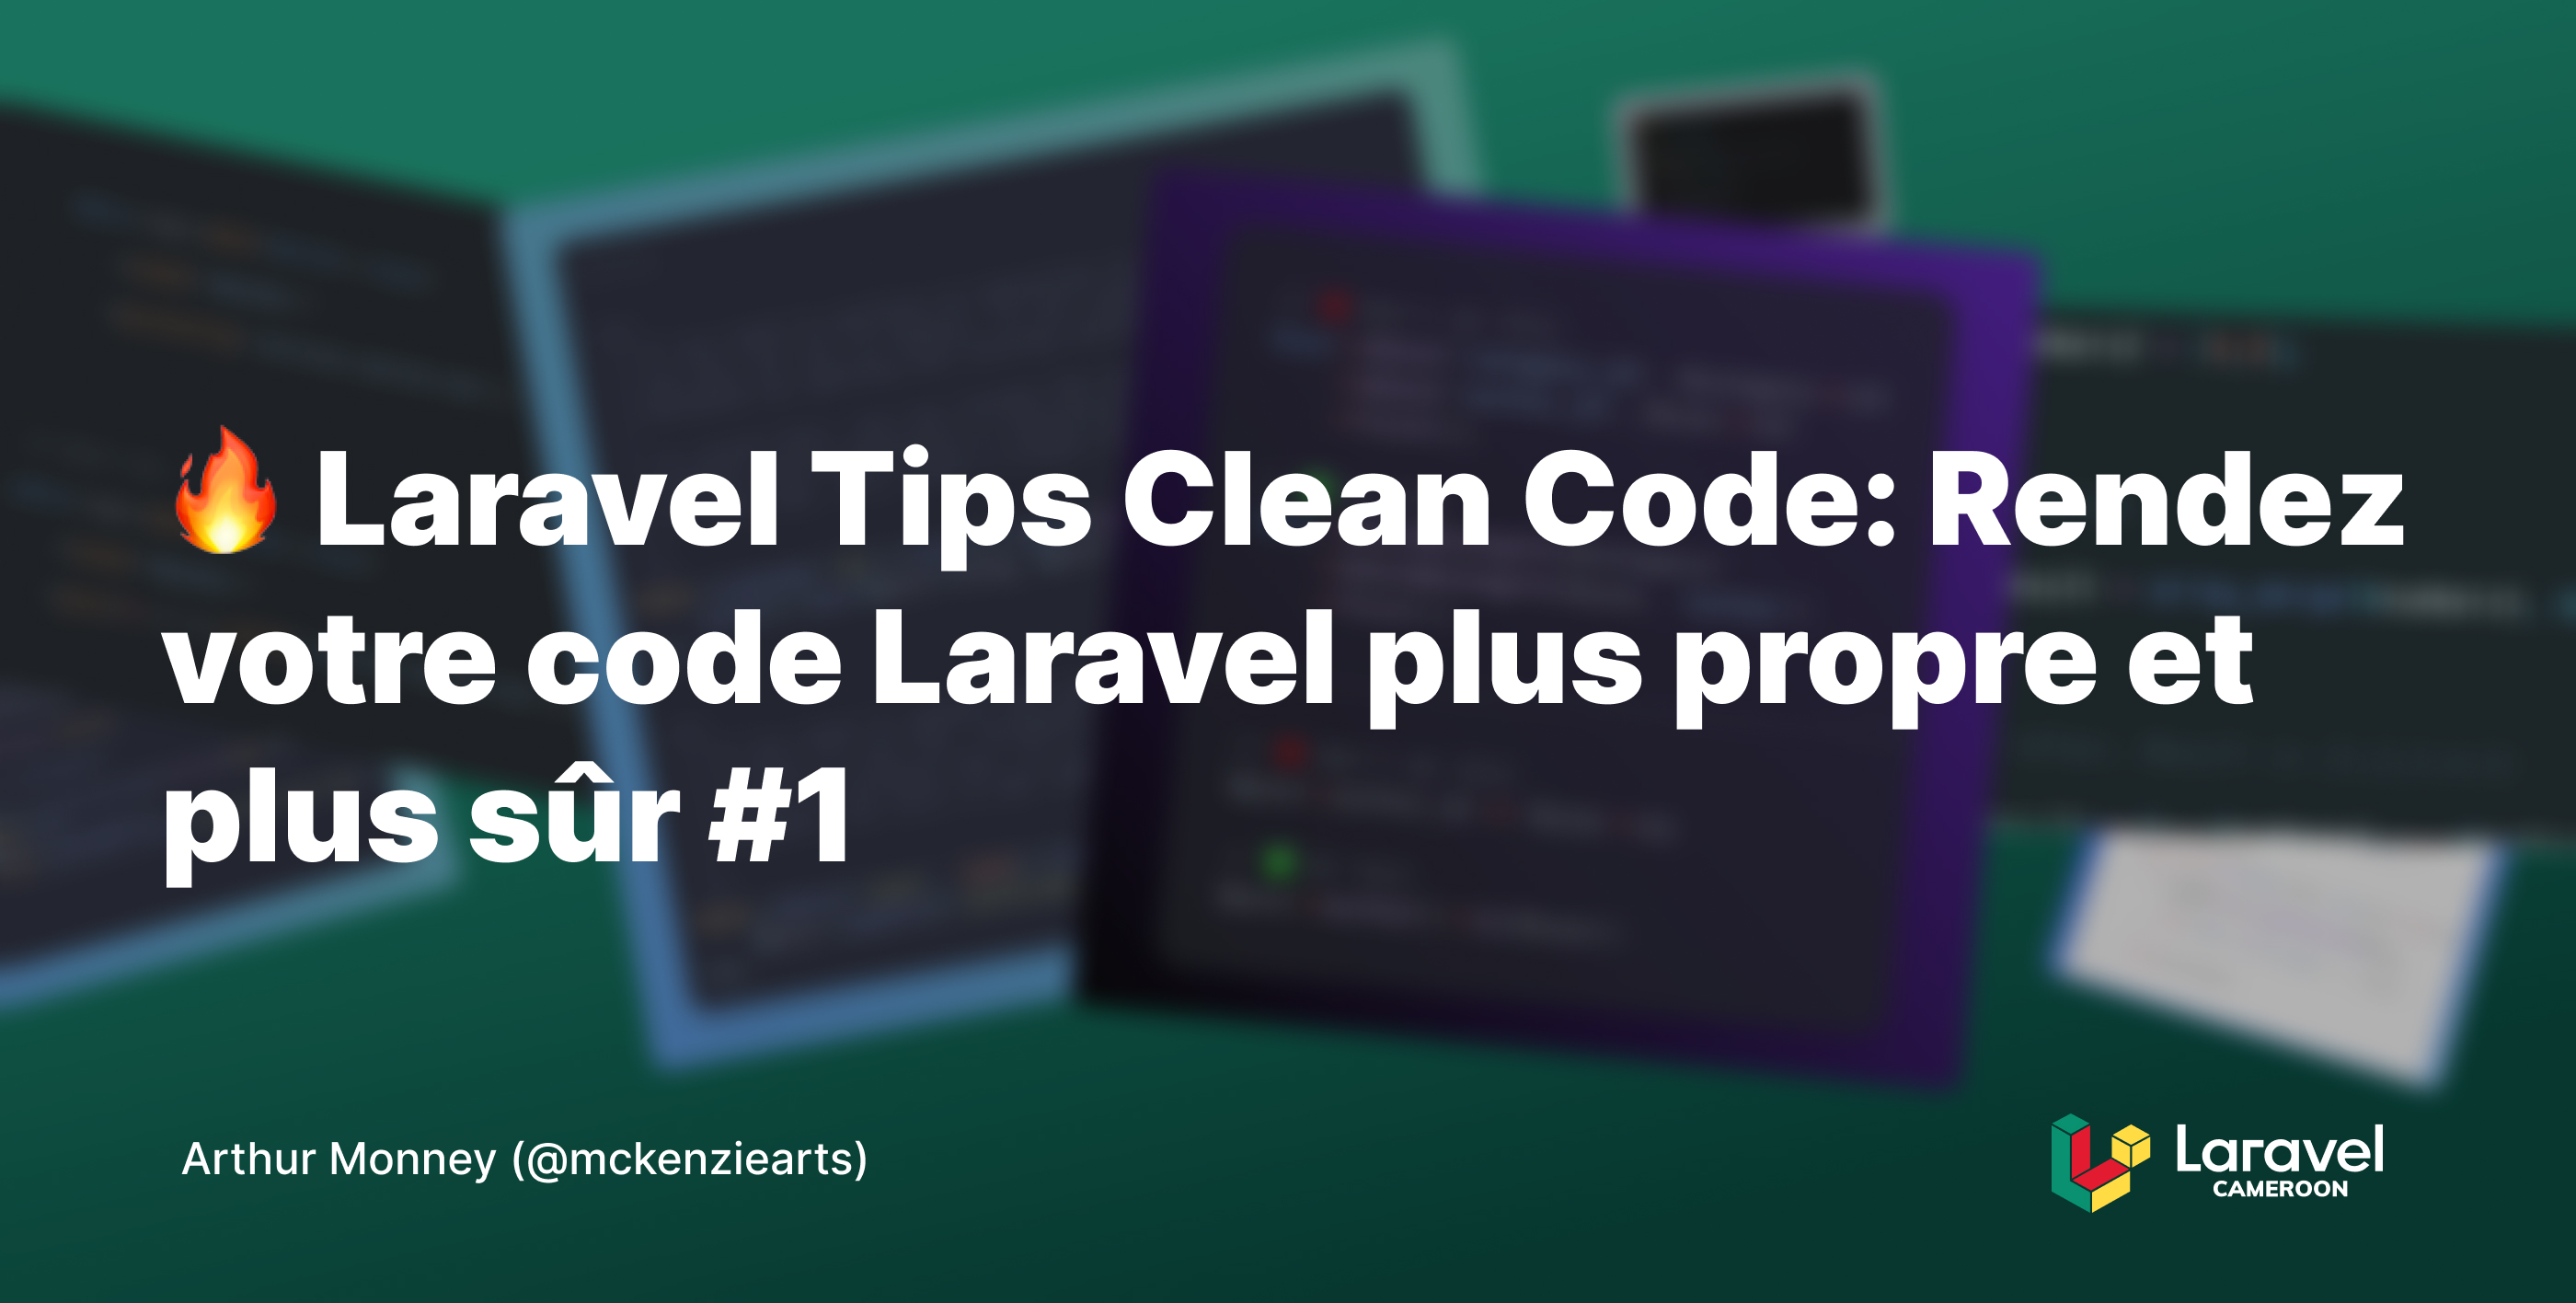 Laravel Tips Clean Code: Rendez votre code Laravel plus propre et plus sûr #1